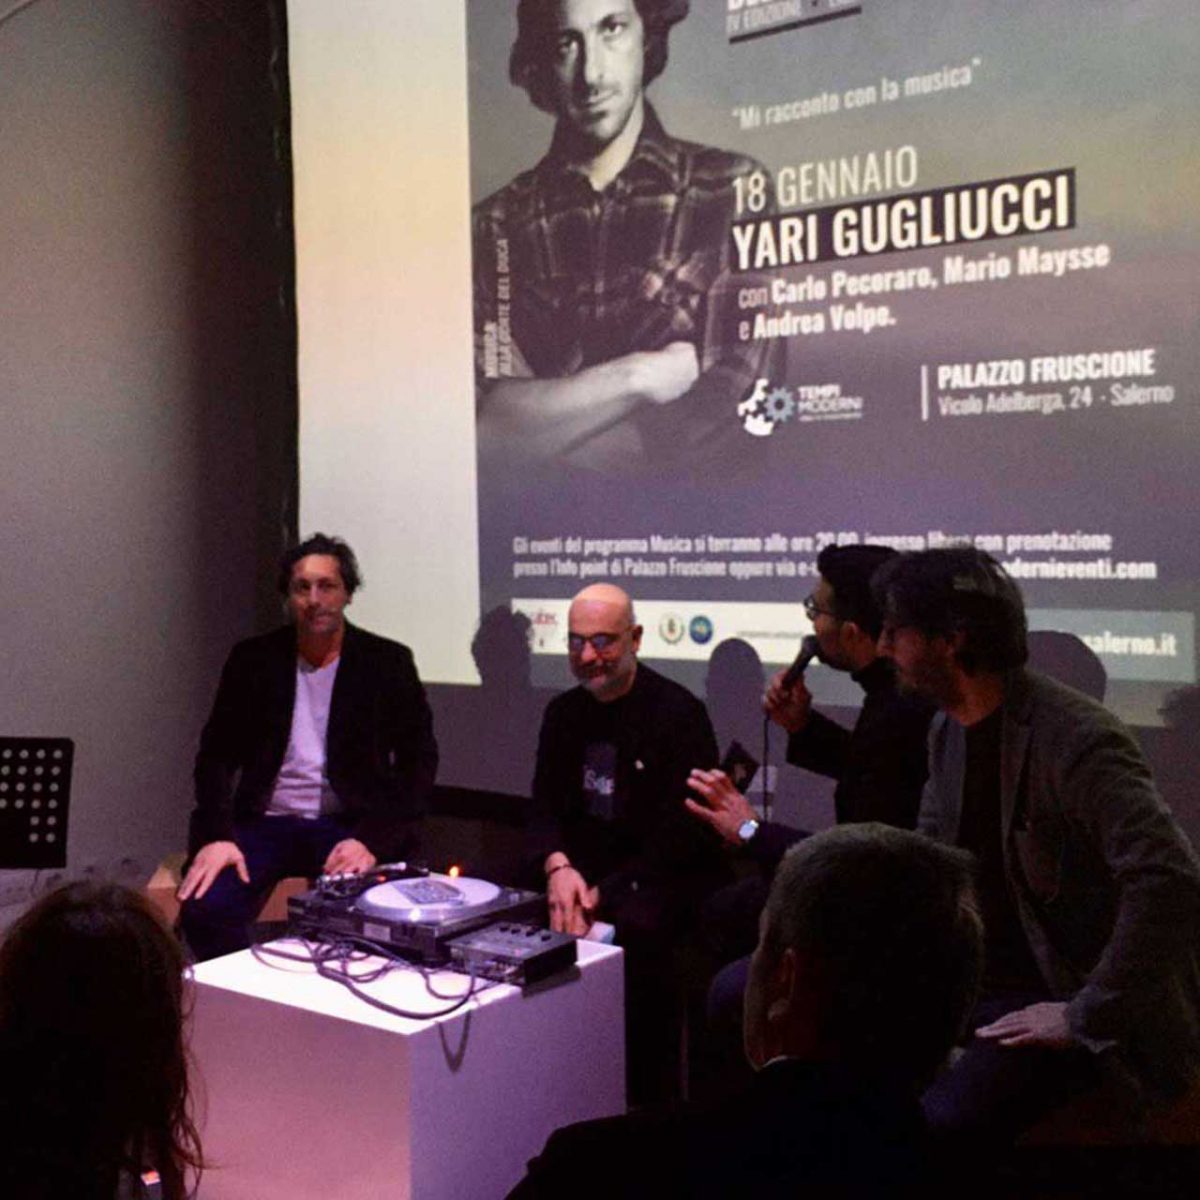 Yary Gugliucci, con Carlo Pecoraro, Mario Maysse e Andrea Volpe